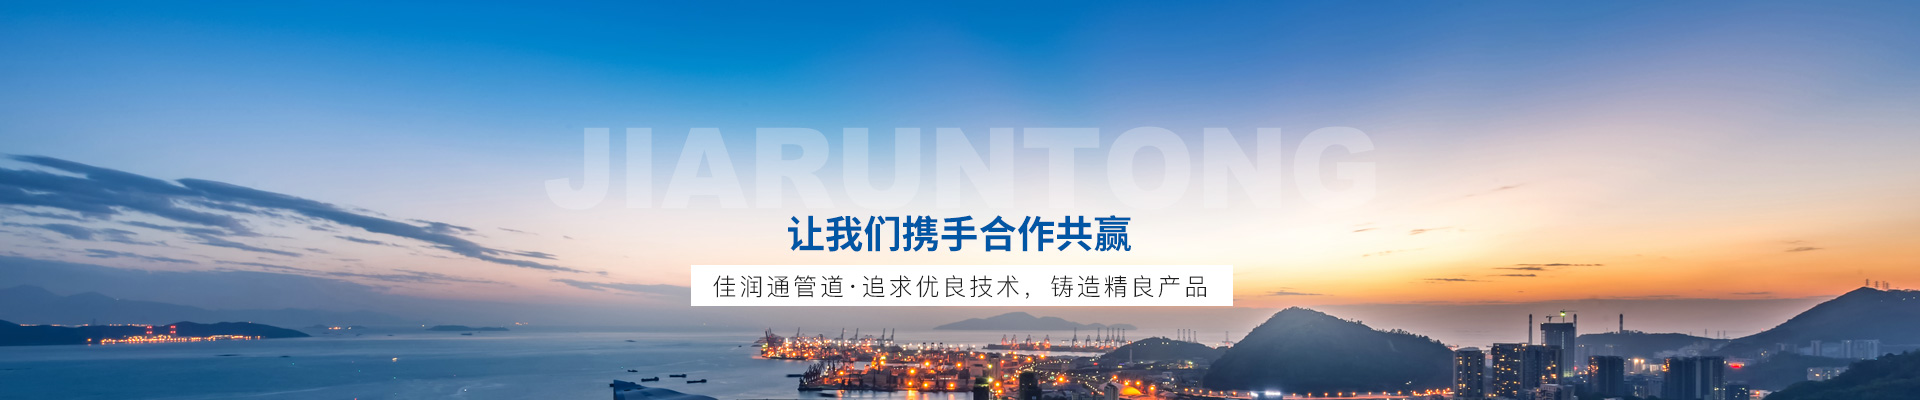 云南省重点发展培育13家橡胶企业